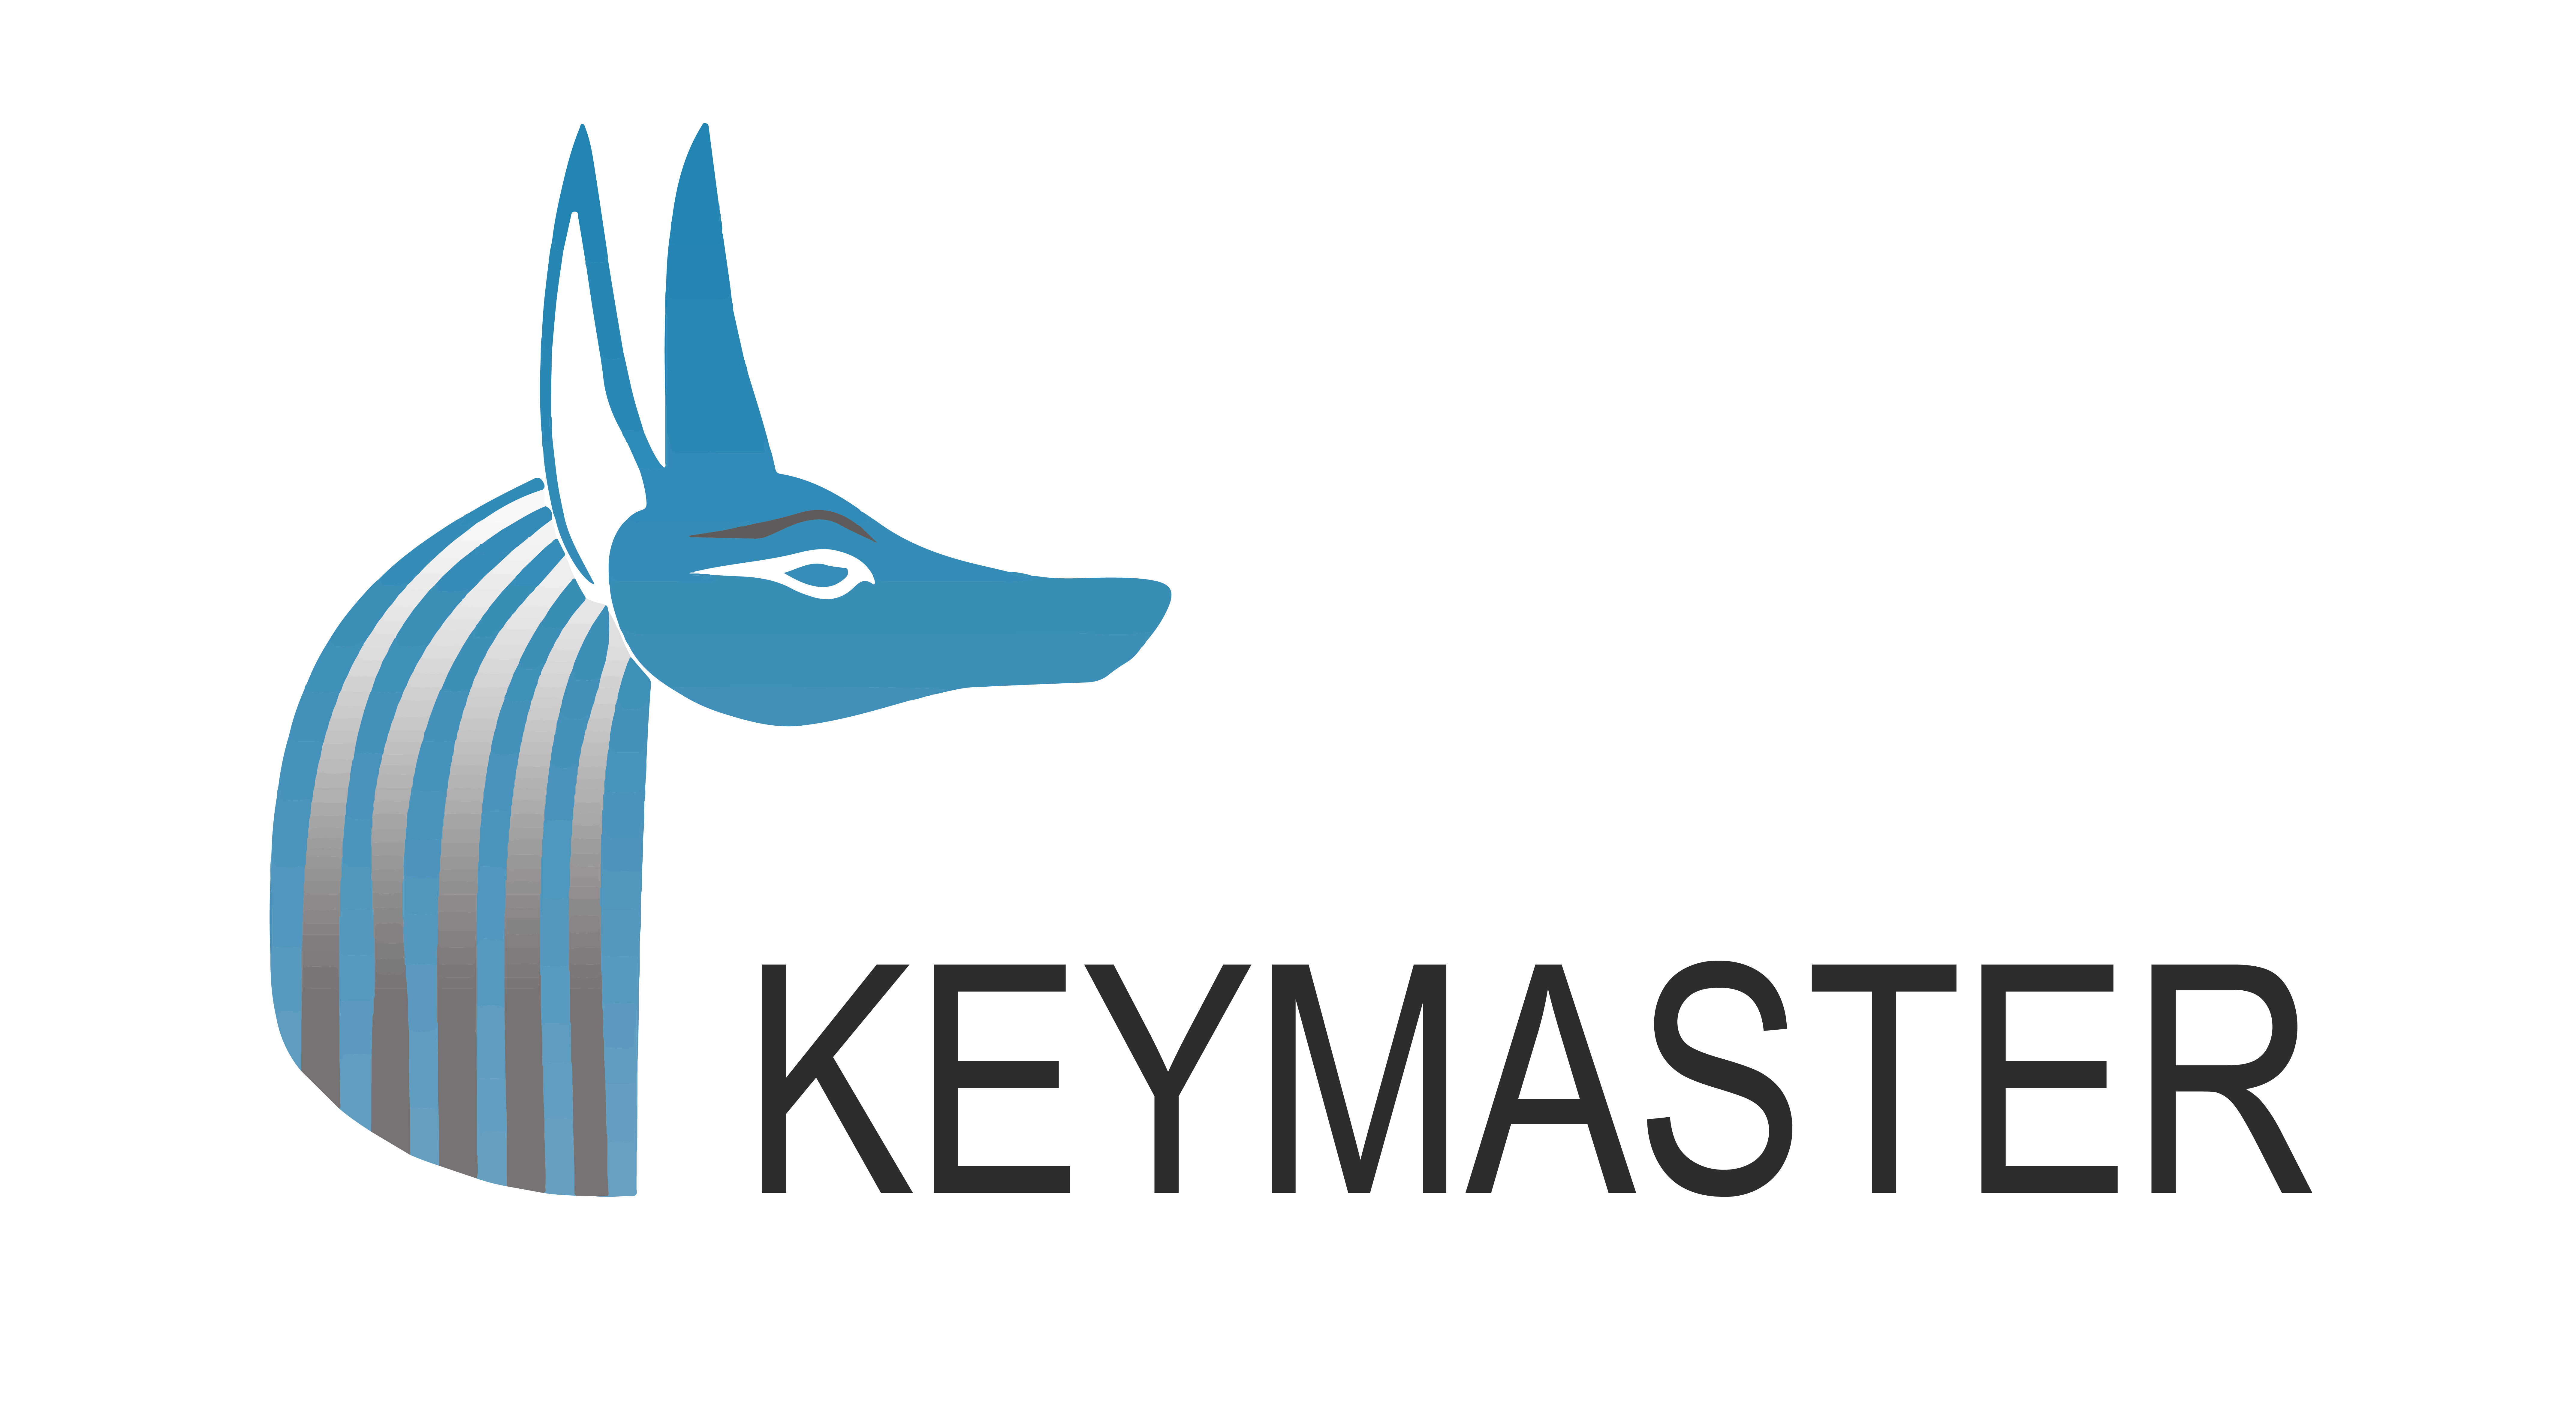 CETEQ is de exclusieve distributeur van Keymaster in Nederland